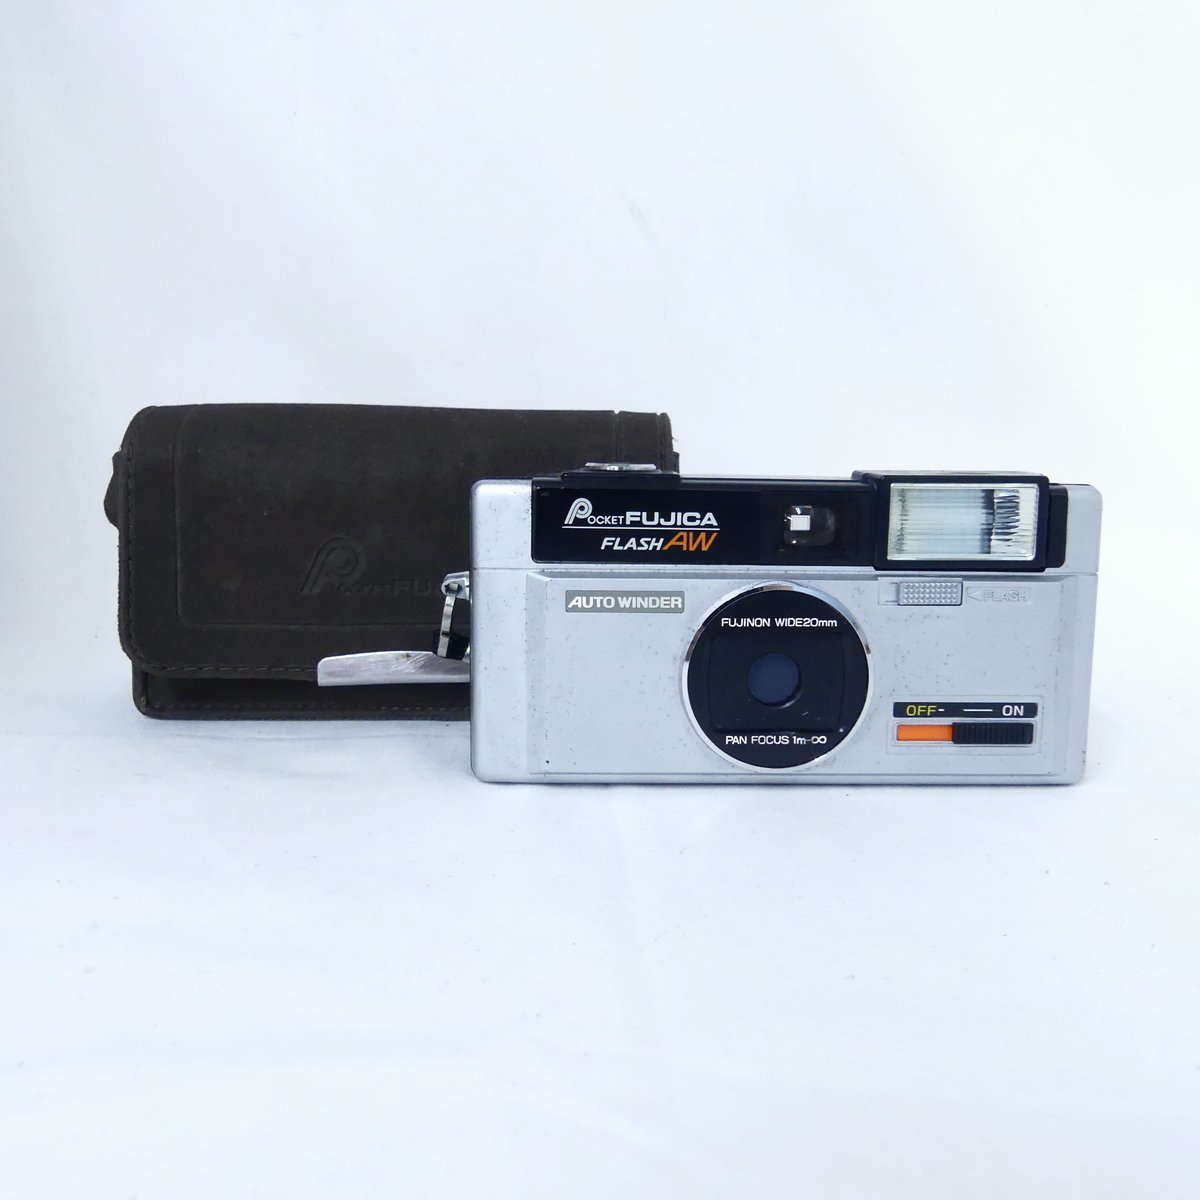 【1円】フジフイルム POCKET FUJICA ポケットフジカ FLASH AW コンパクトカメラ フィルムカメラ 現状品 USED /2309Cの画像1